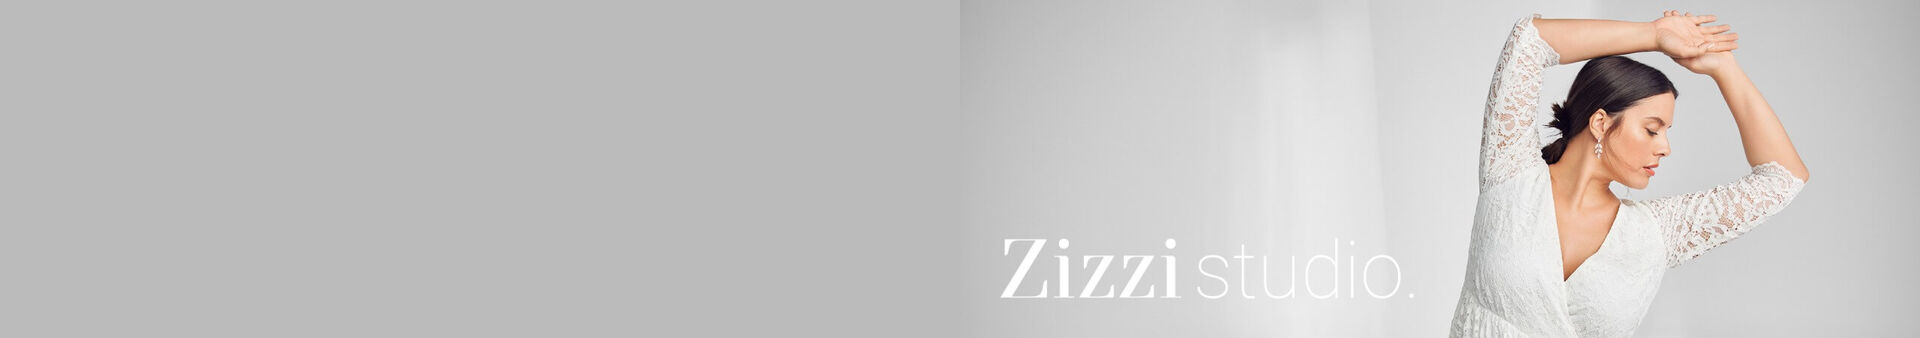 Vêtements de mariage femmes grandes tailles - Taille 42-64 - Zizzi